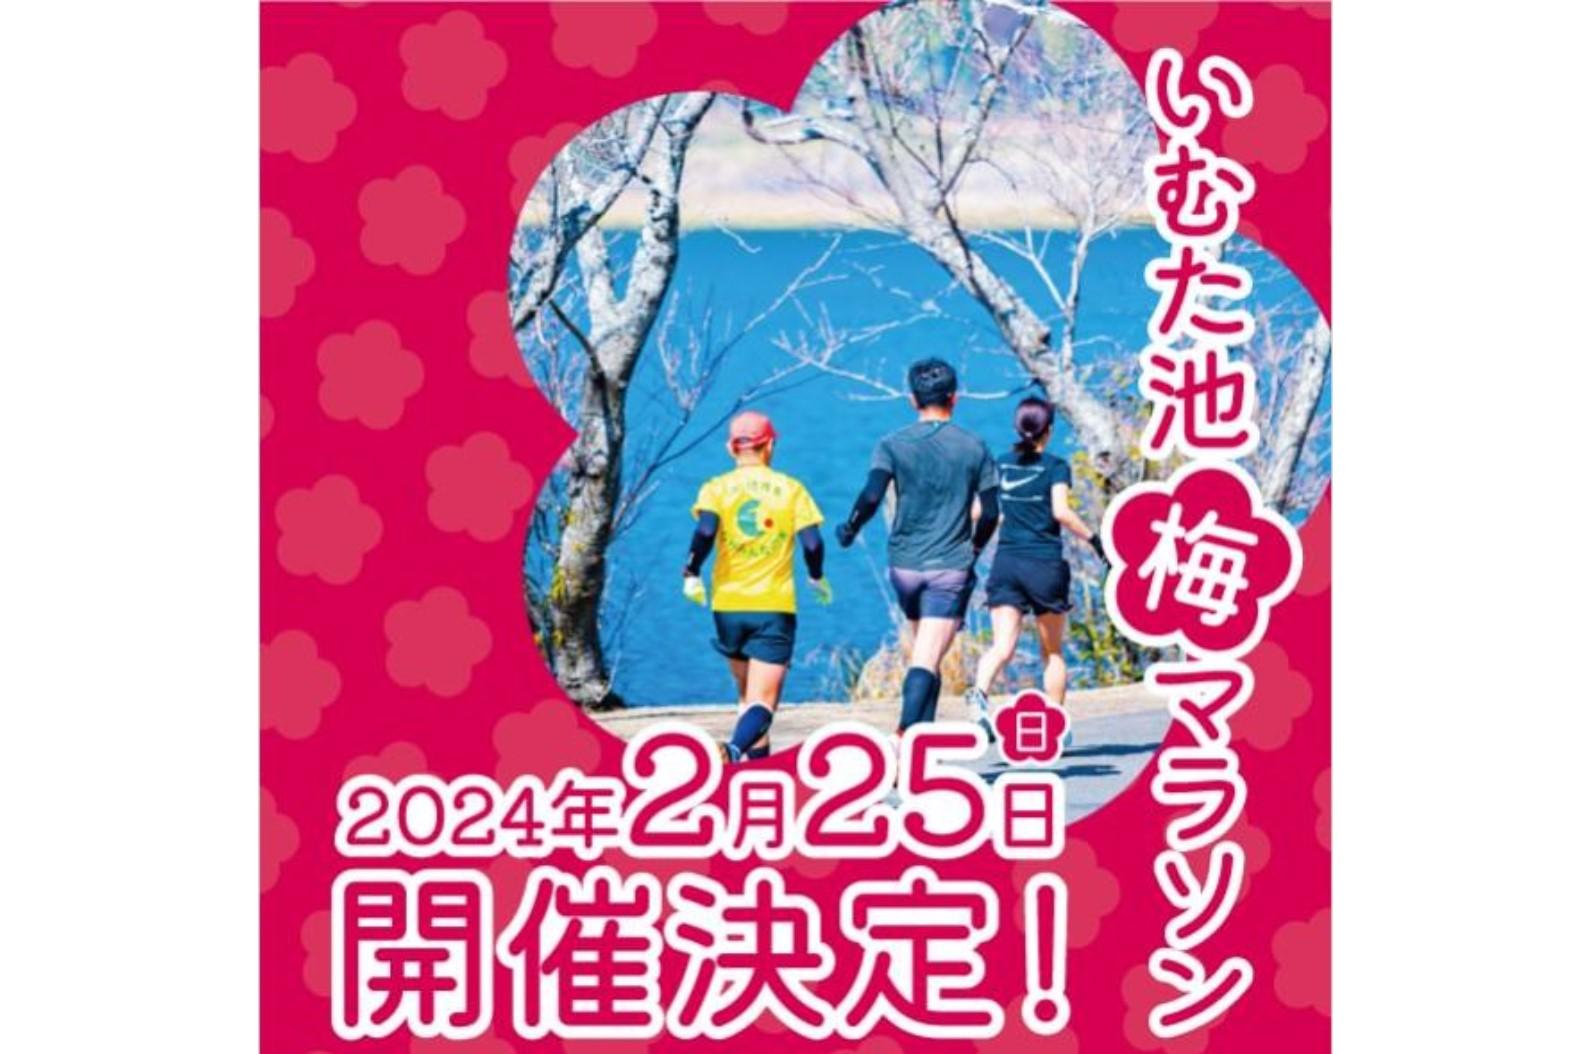 【2024】いむた池梅マラソン大会-1